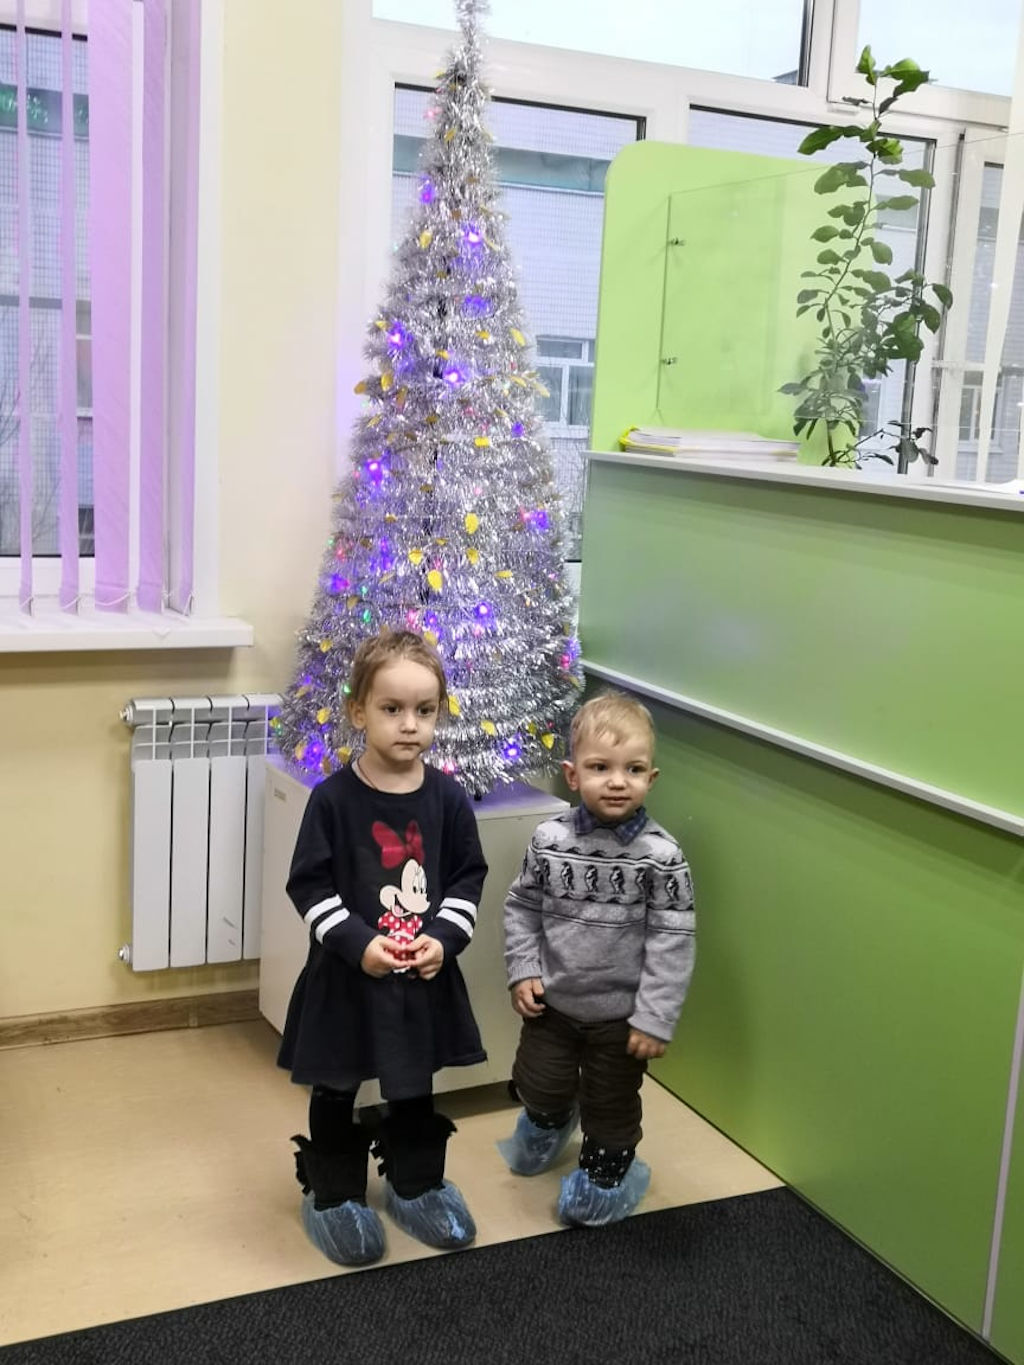 21 декабря 2019 г. в нашей больнице состоялся очередной День открытых дверей